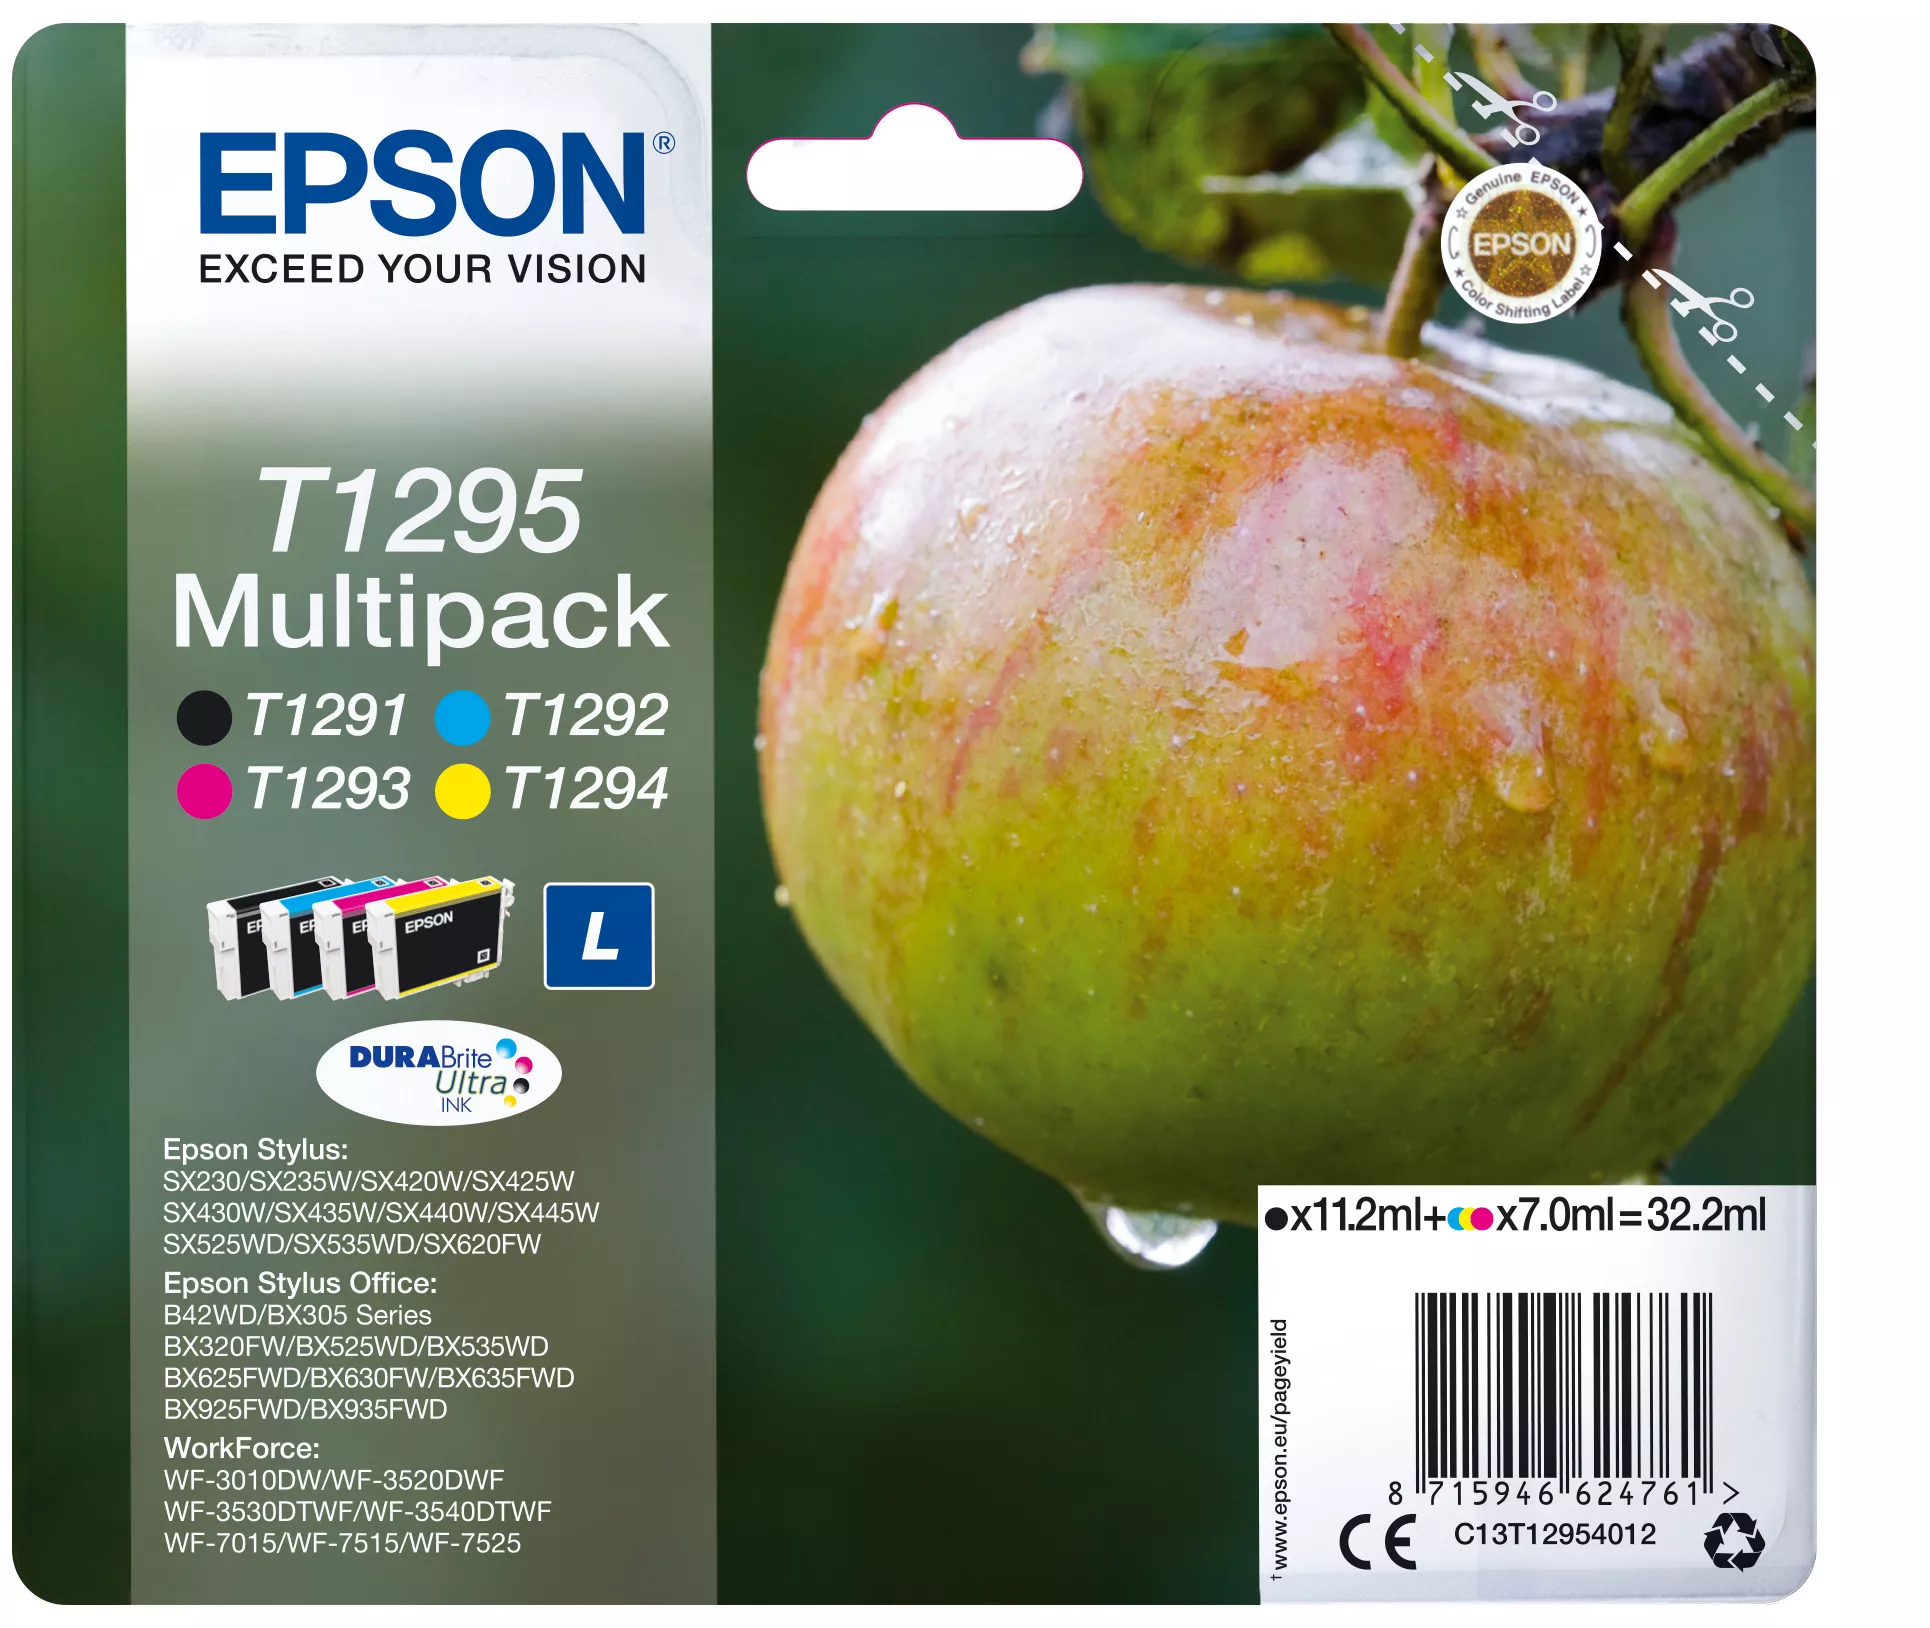 Vente EPSON T1295 cartouche d encre noir et tricolore haute au meilleur prix